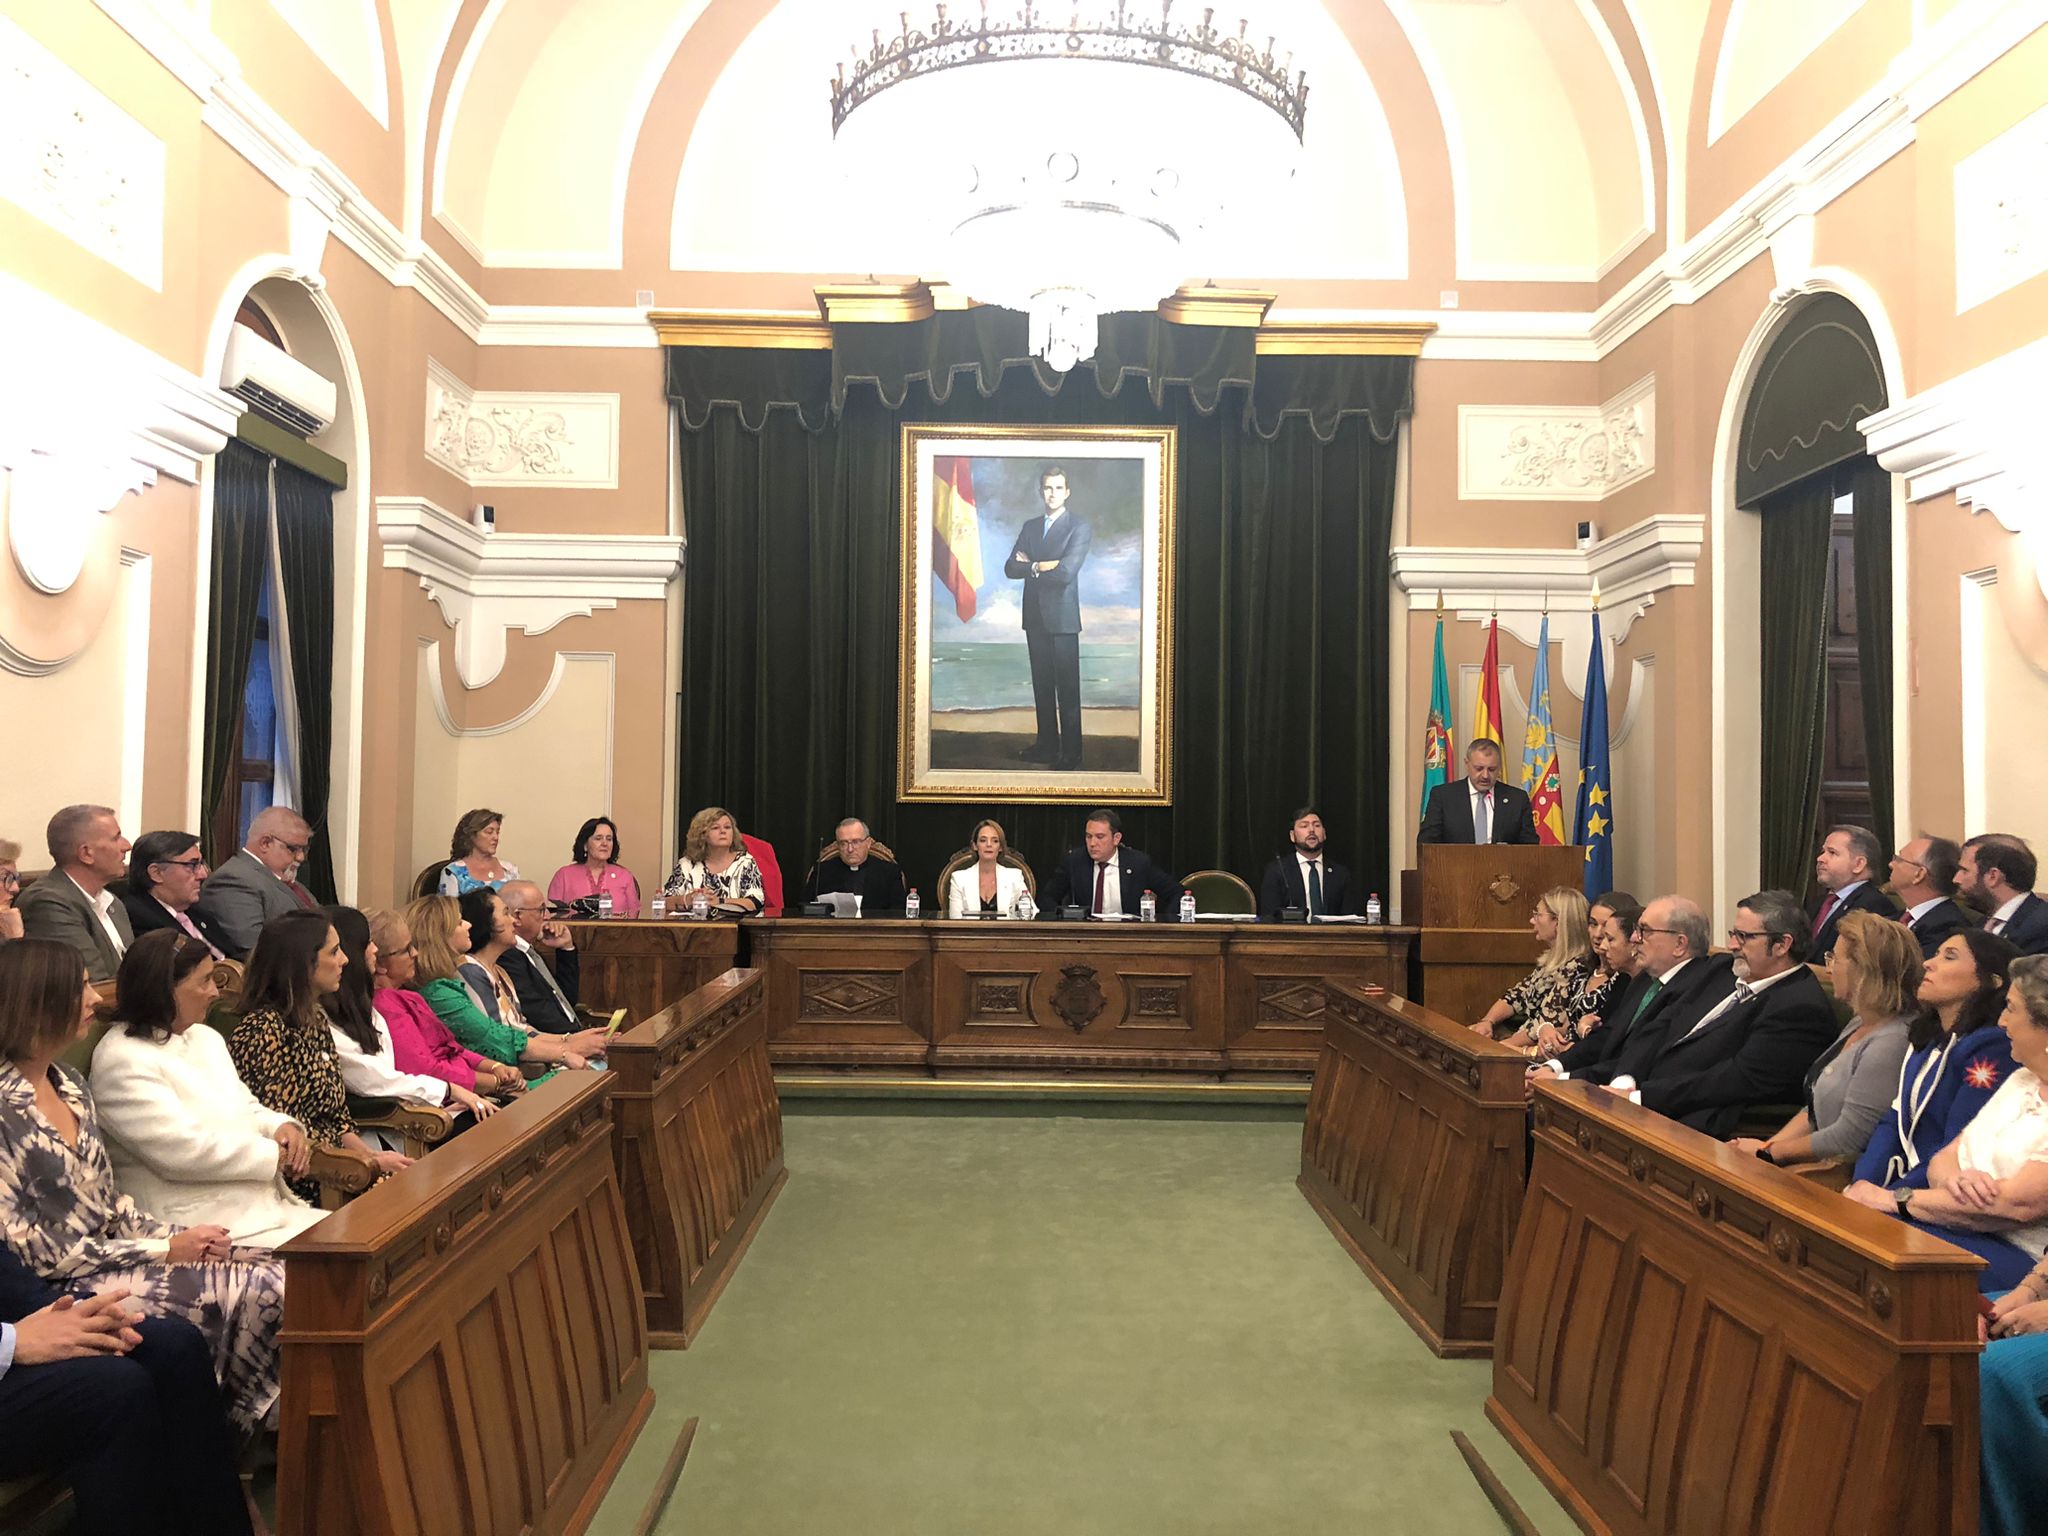 L'Ajuntament de Castelló recupera el canvi de la Junta de Govern de la Real Confraria del Lledó en el saló de plens del consistori